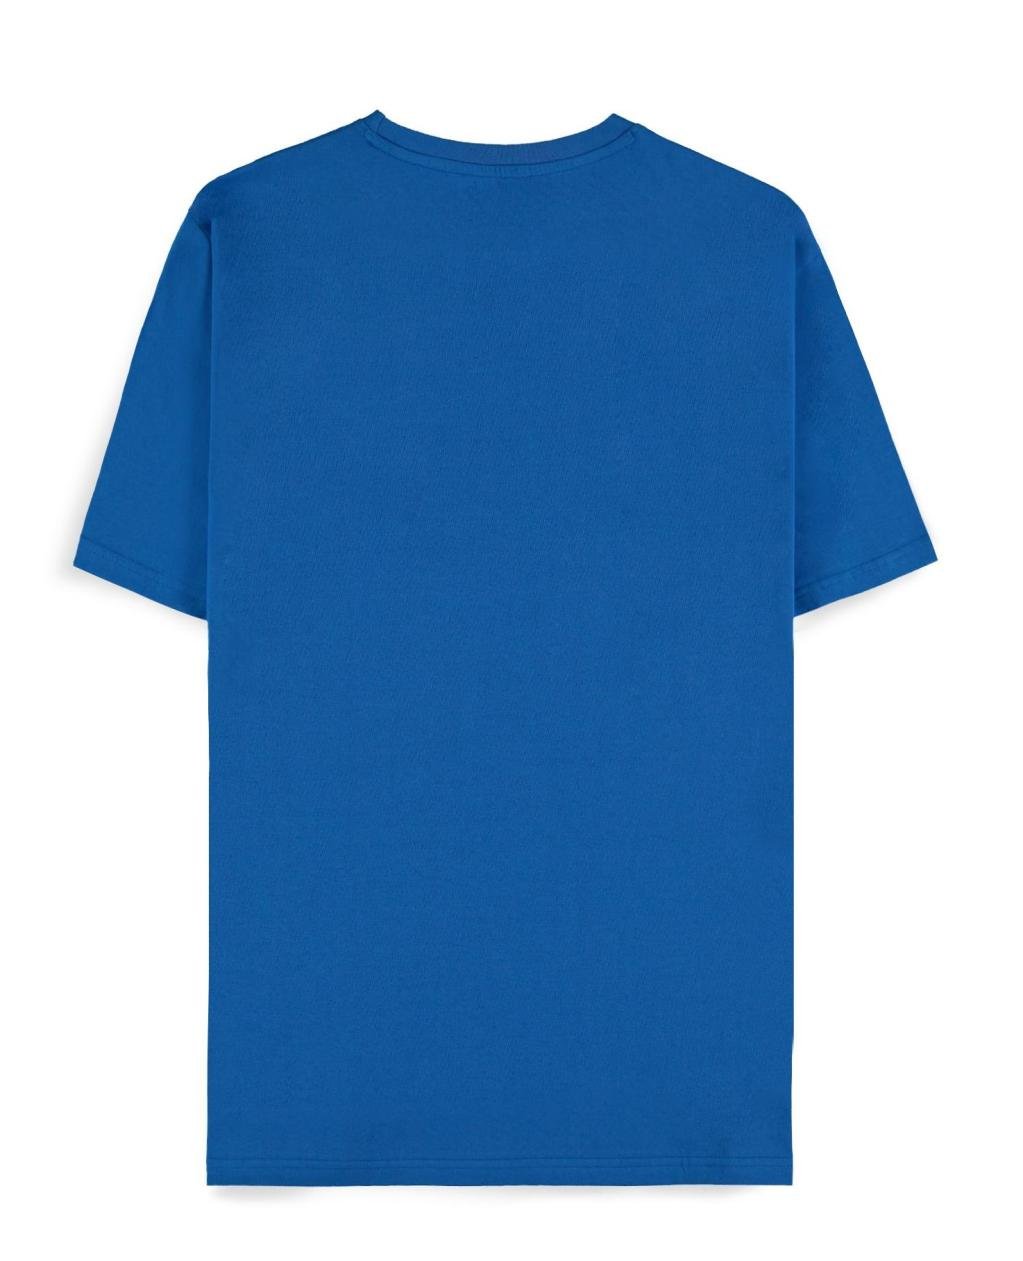 POKEMON - Blue Squirtle - Men's T-shirt (L)